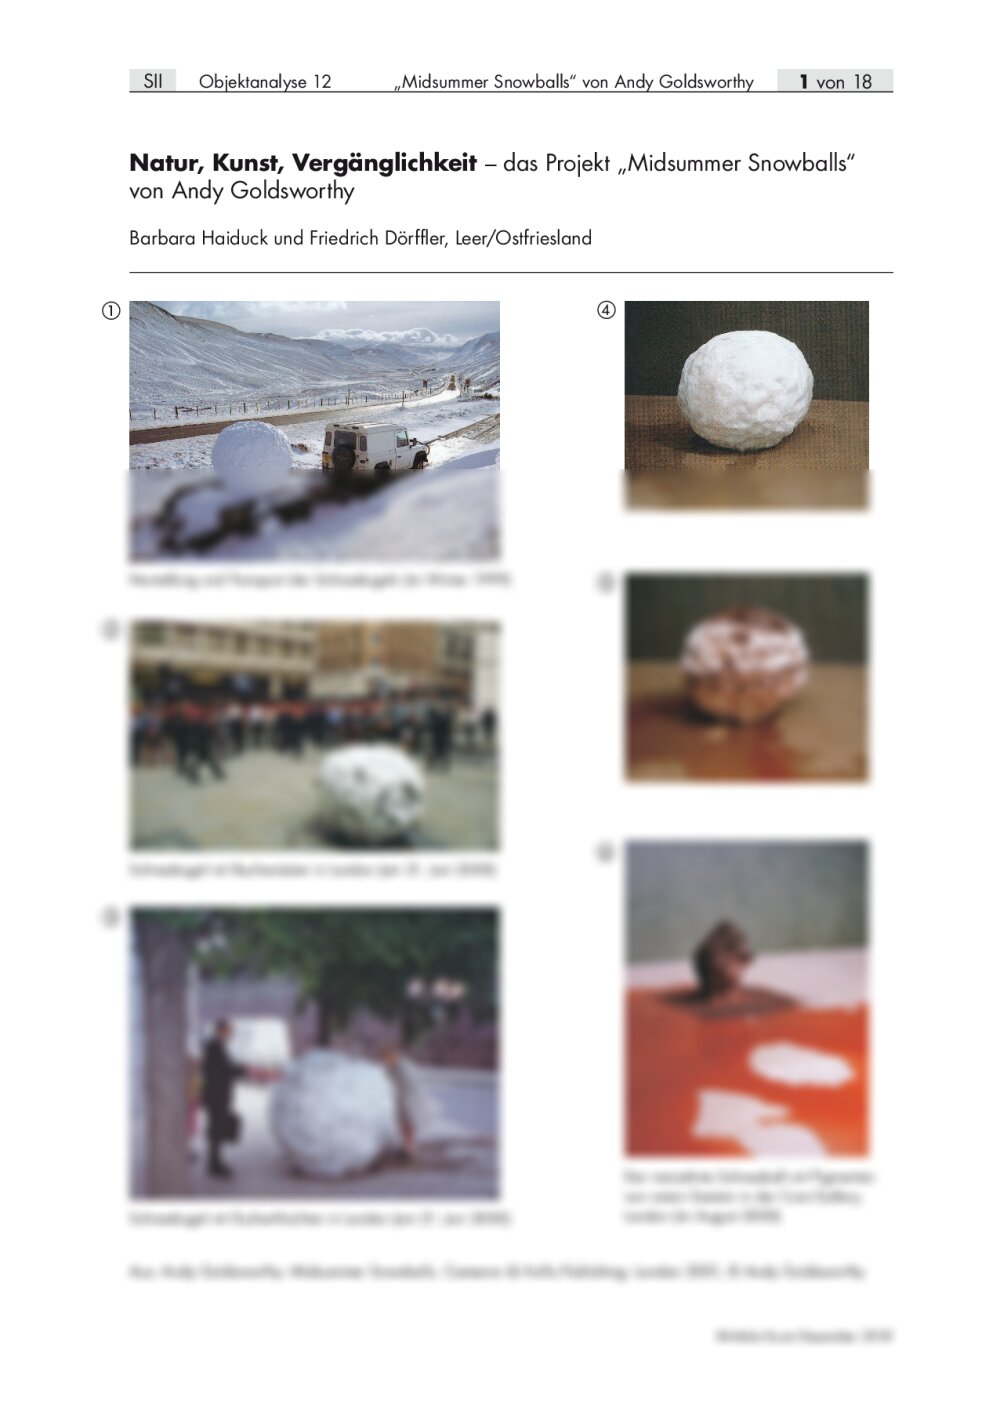 Das Projekt „Midsummer Snowballs“ von Andy Goldsworthy - Seite 1